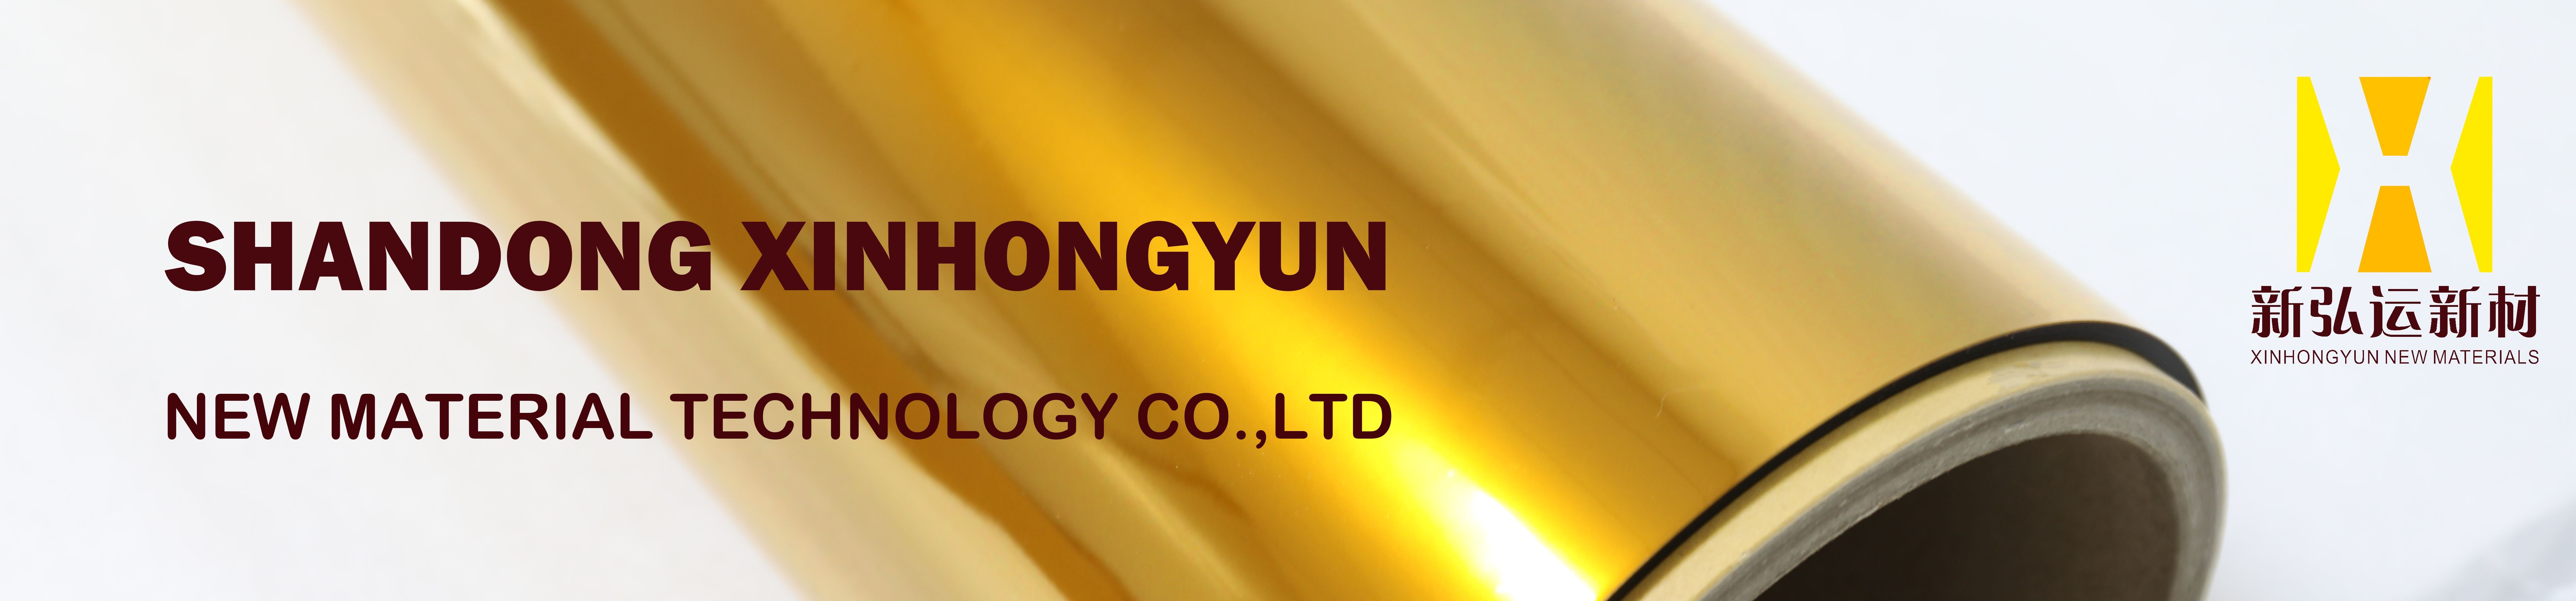 Shandong XinHongYun New Material Tecnology Co.Ltd